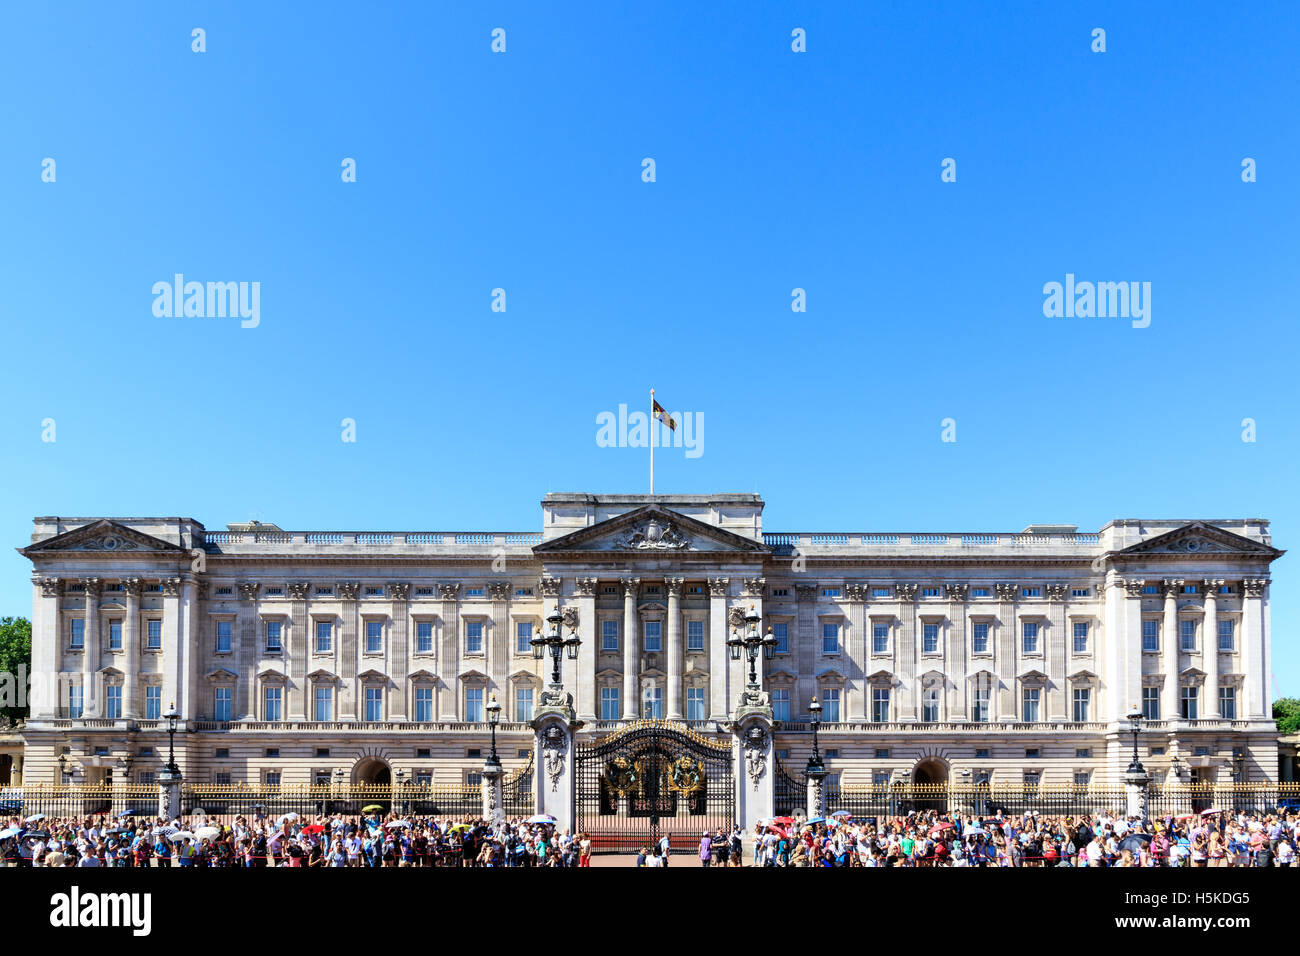 El Palacio de Buckingham en Londres con una multitud de turistas en un día despejado Foto de stock